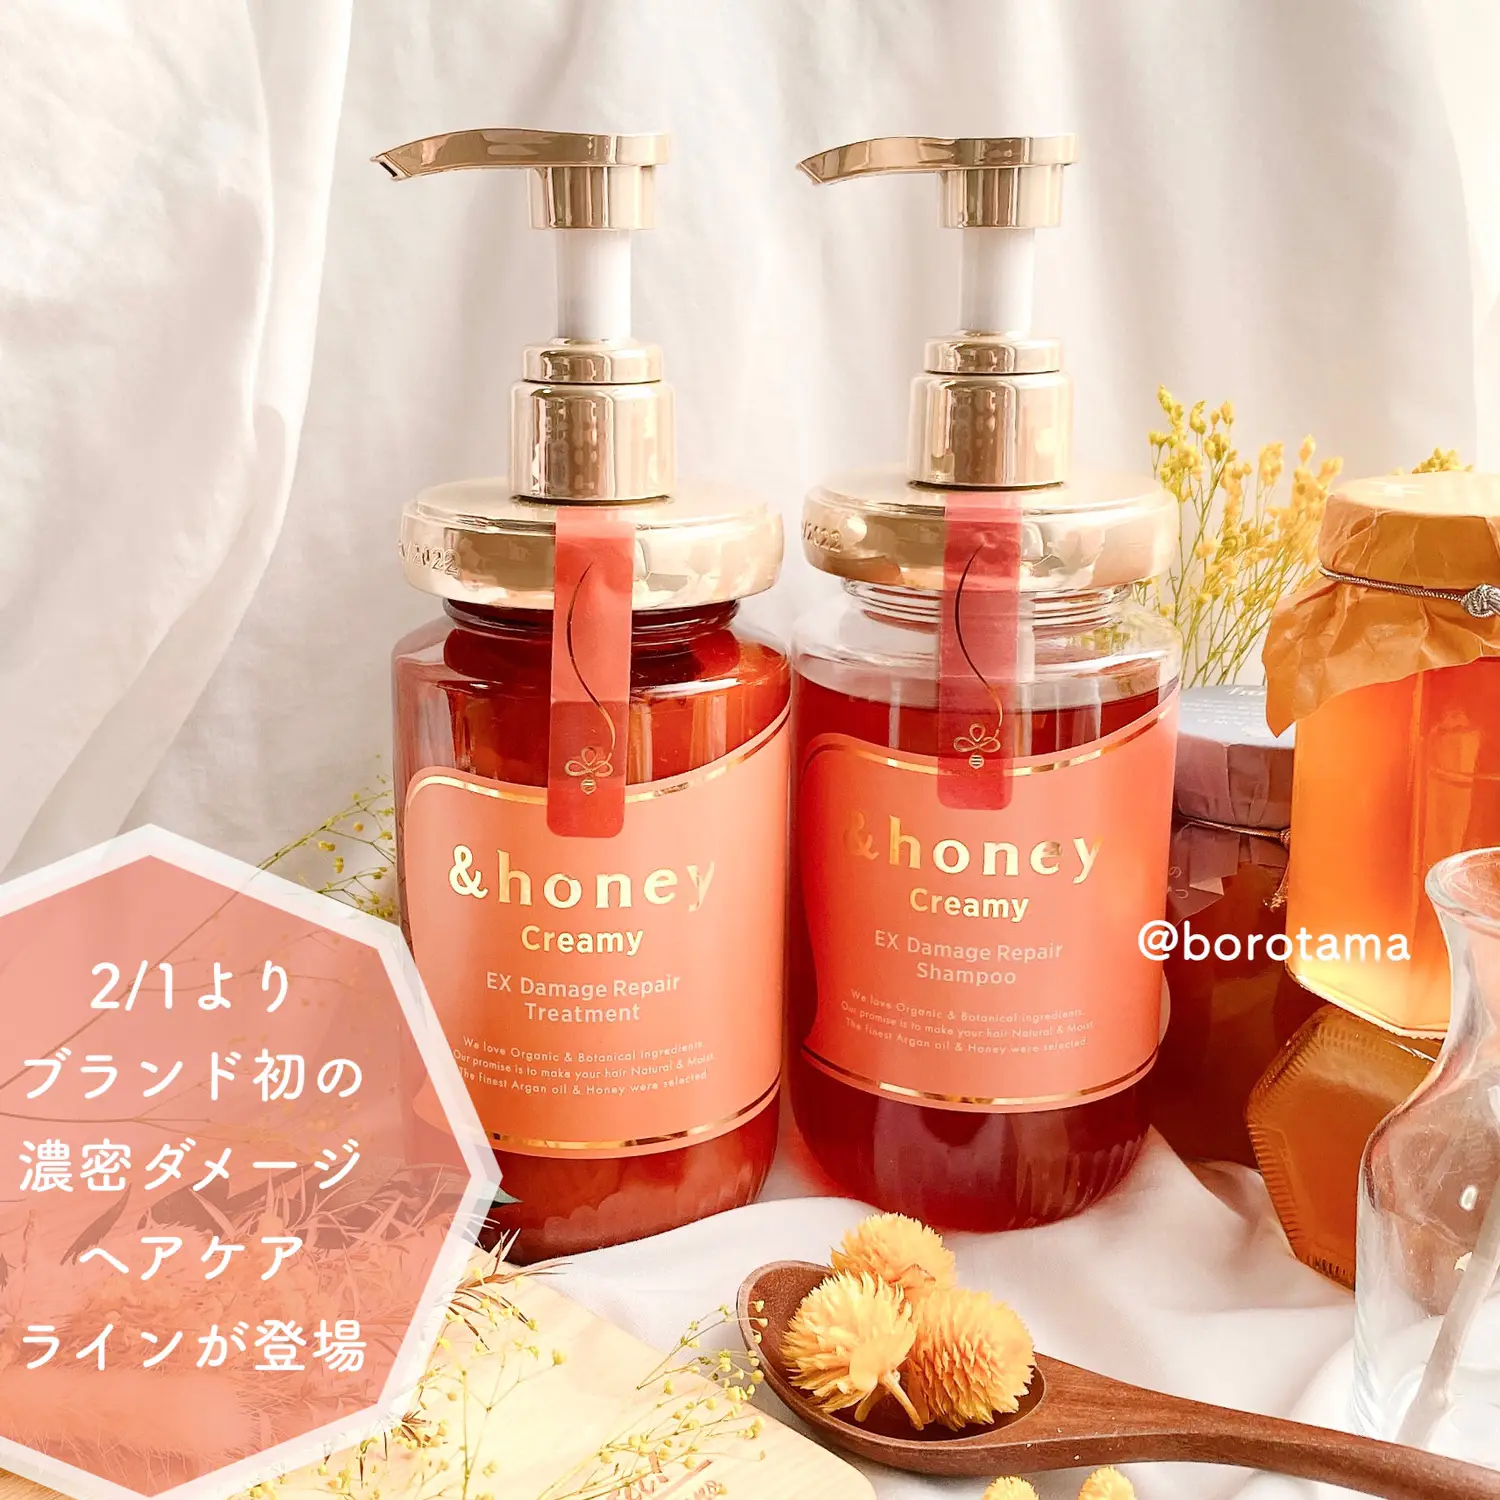 honey Deep Moist Shampoo 1.0 (Japanese Honey Shampoo) 440ml – Japanese  Taste